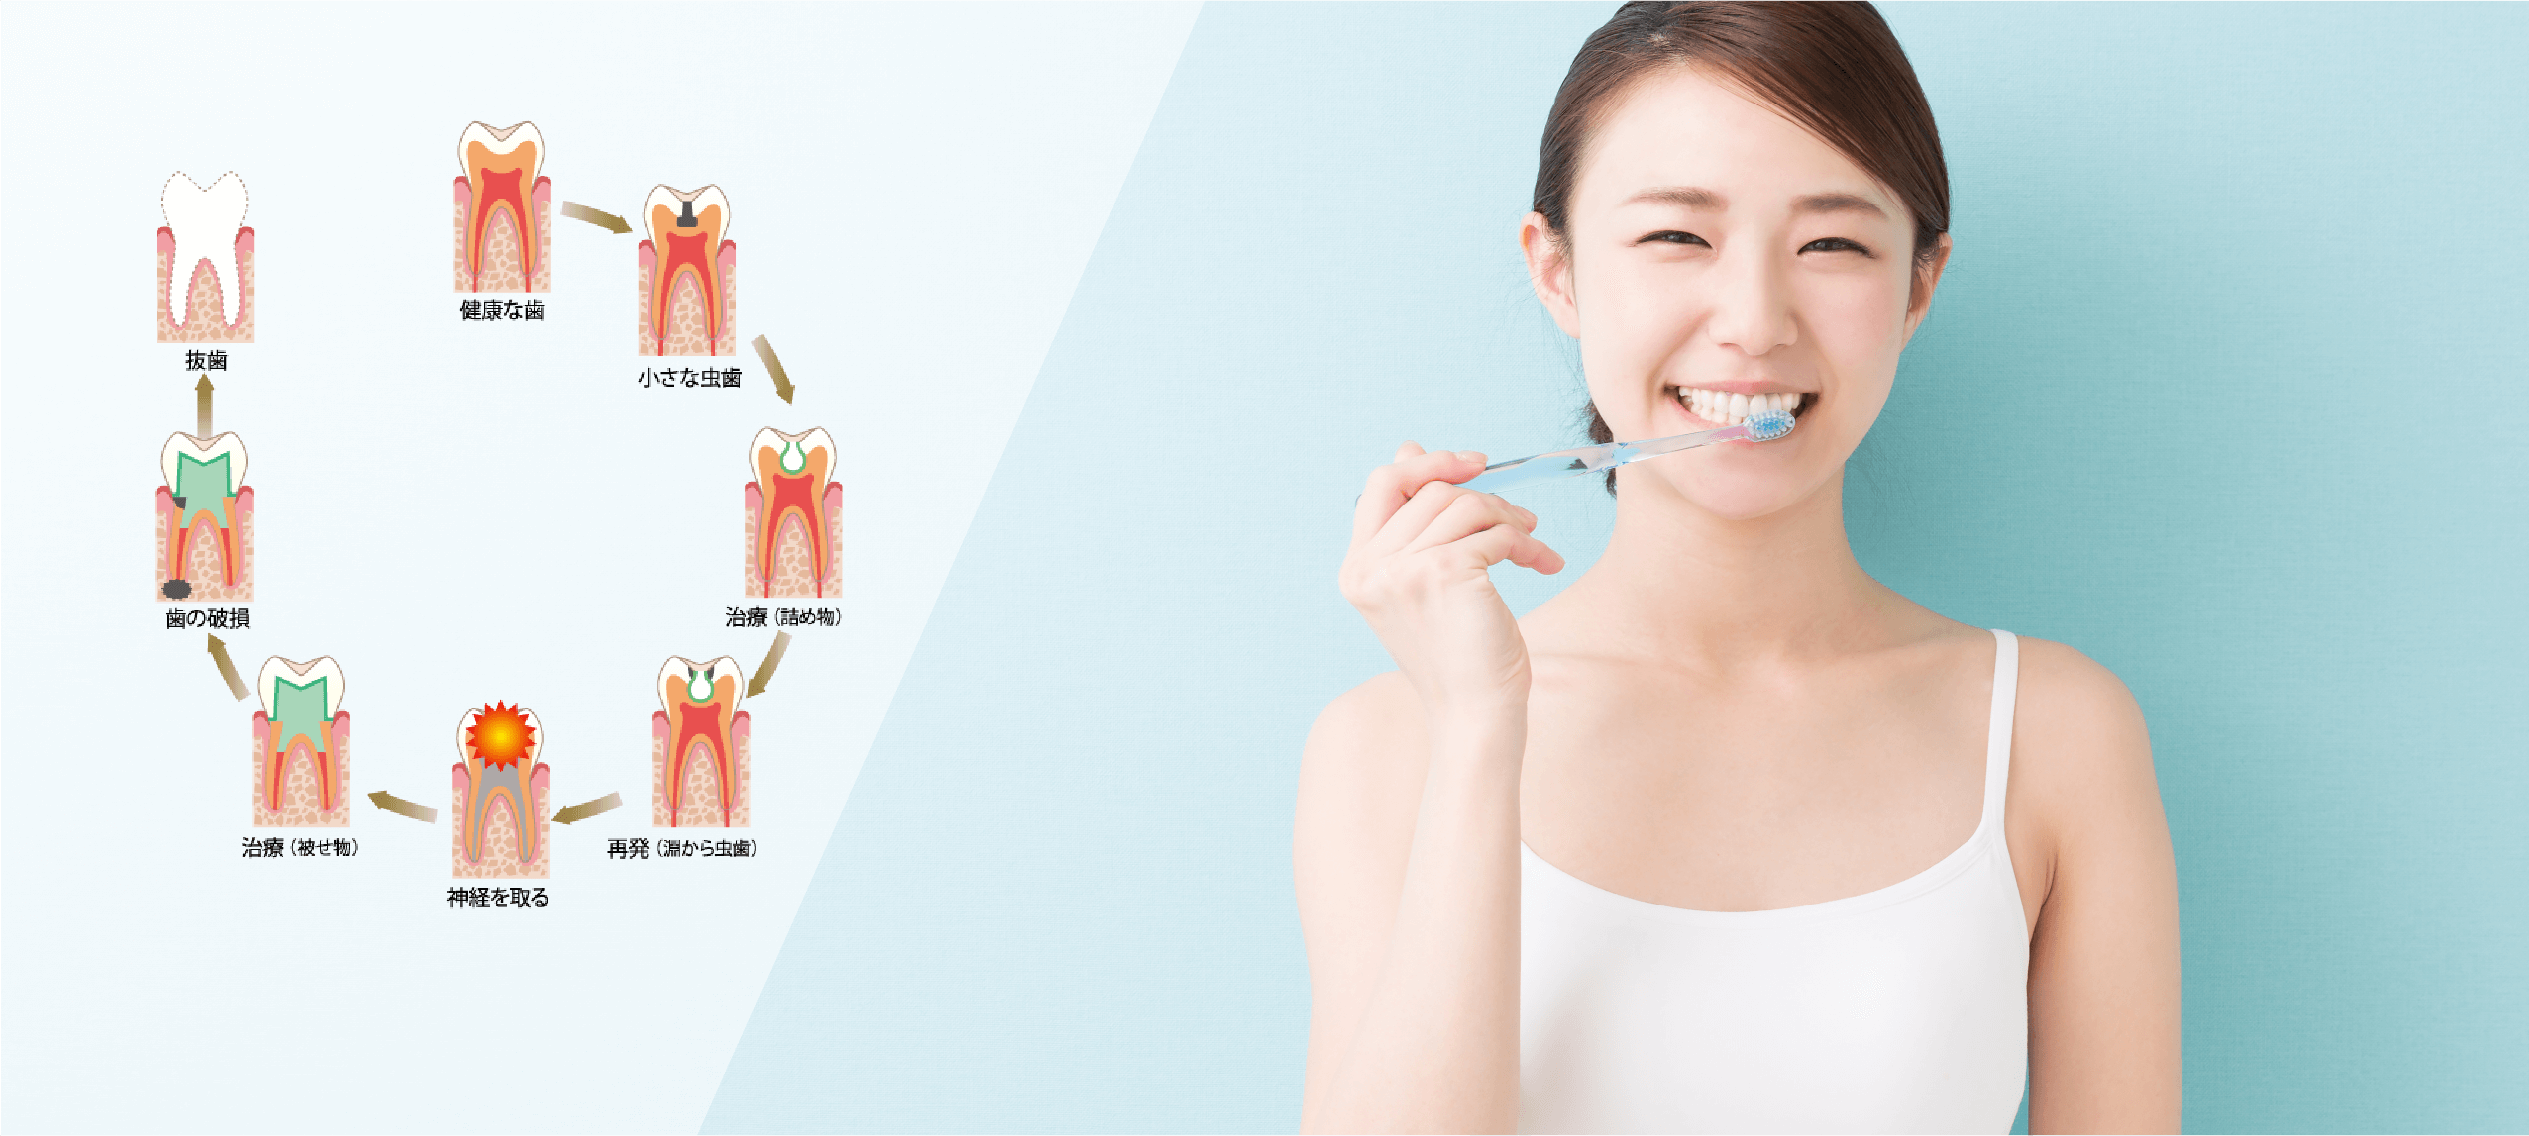 腔管理を徹底歯のサイクルを考えた治療を実践